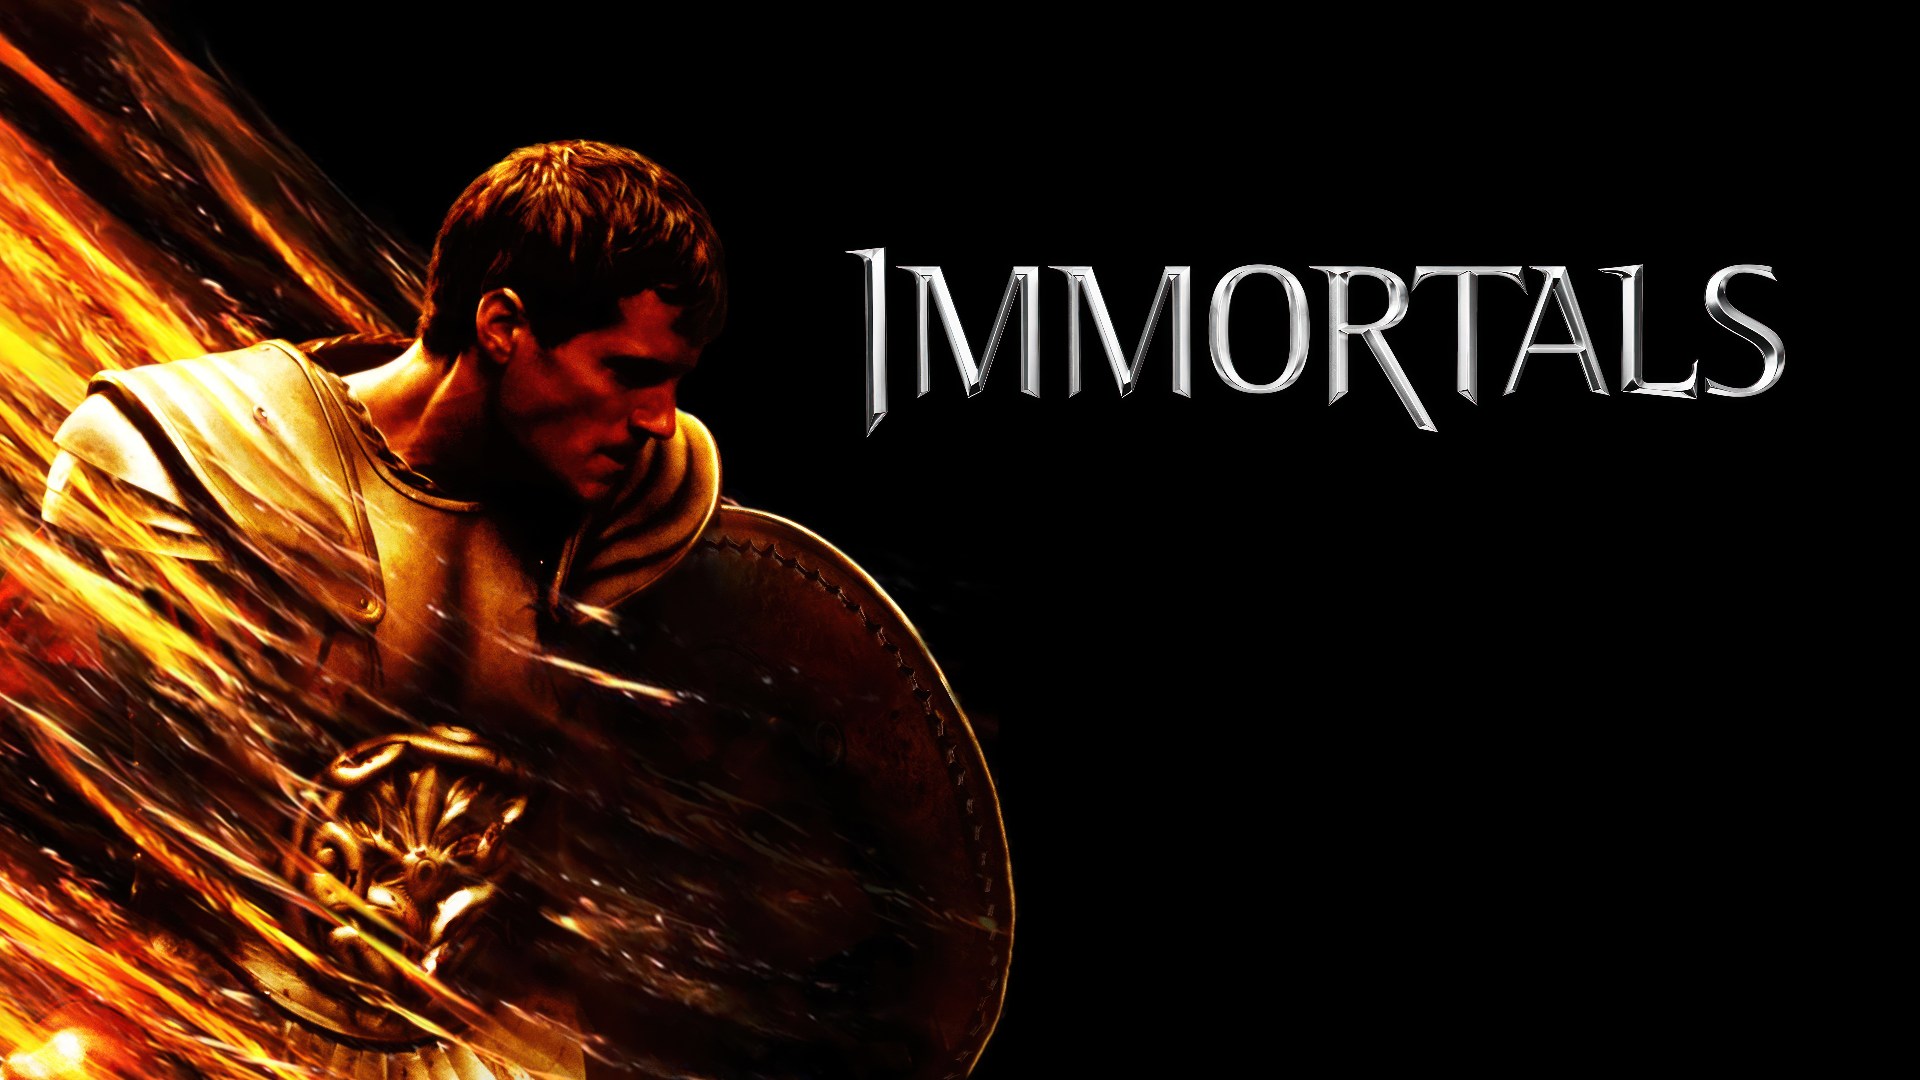 Immortals (2011) Google Drive Download